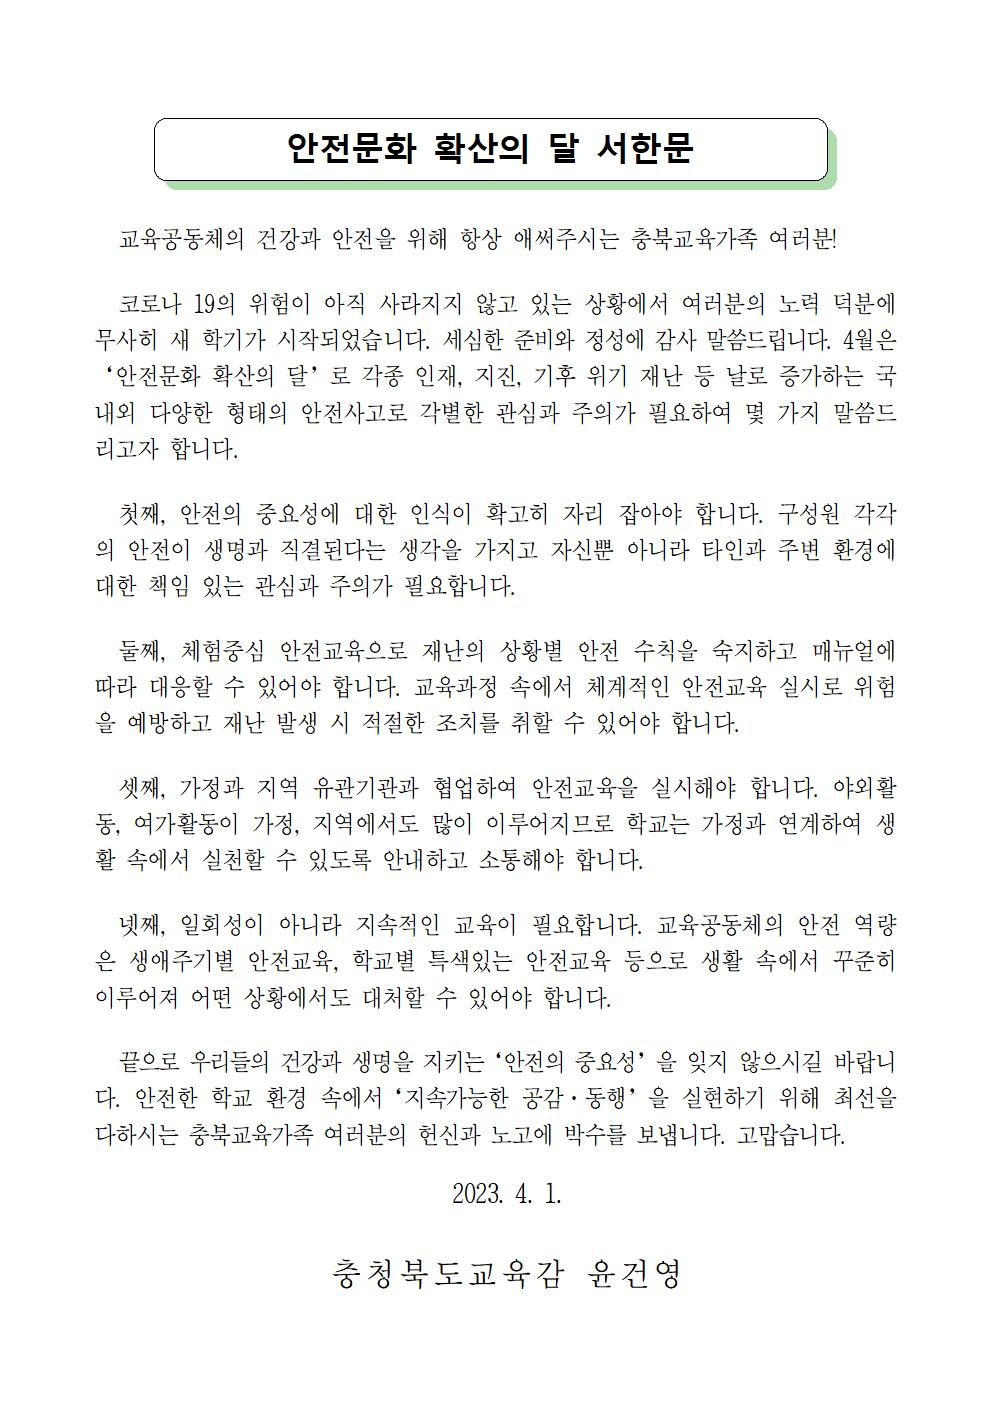 충청북도교육청 체육건강안전과_안전문화 확산의 달 서한문(1)001